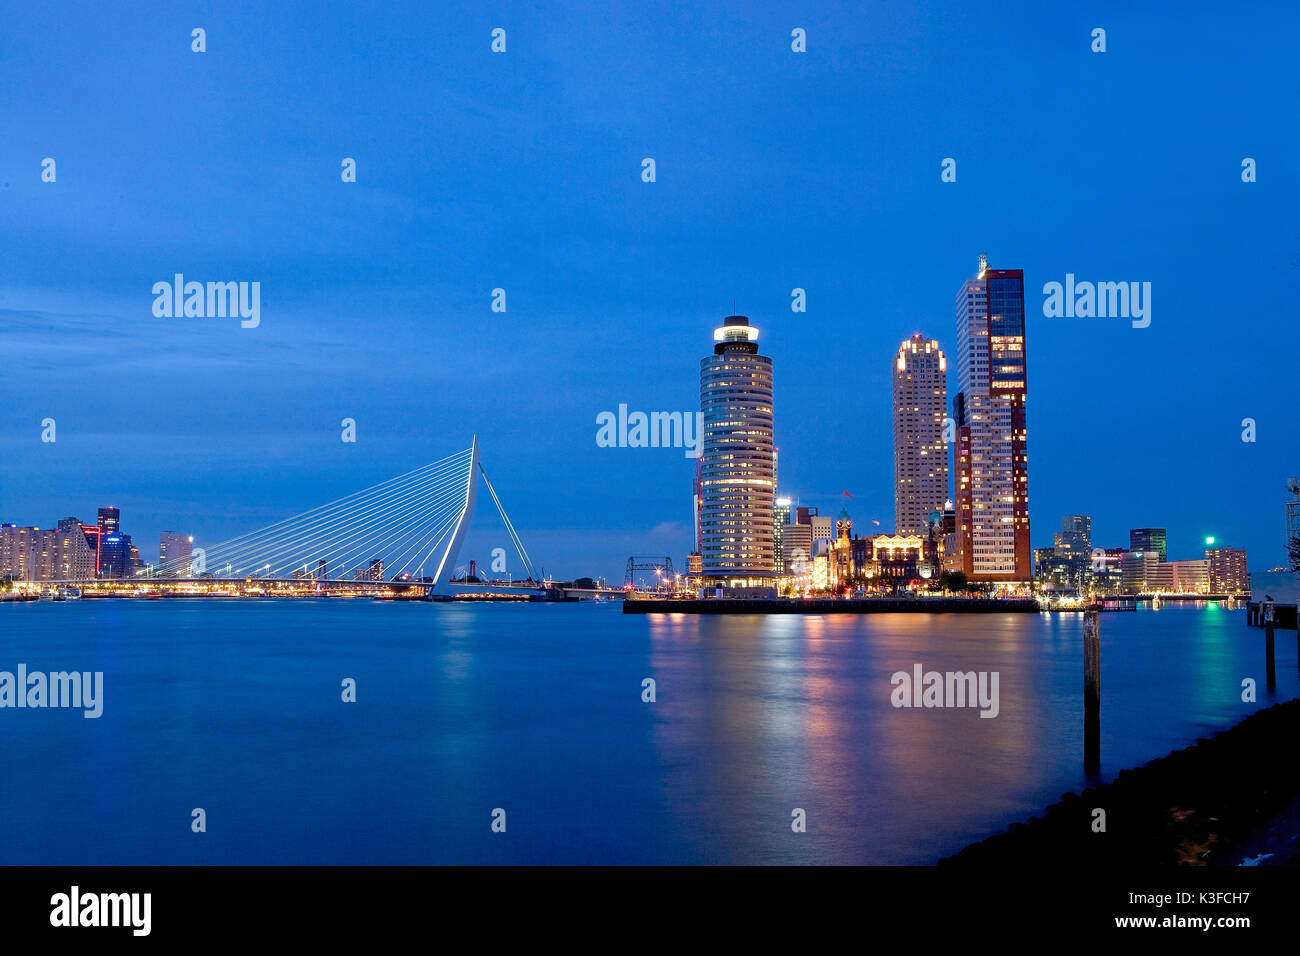 Ausblick bei Nacht Rotterdam. Auf der linken Seite die Erasmusbrücke, rechts die städtebauliche Entwicklung für die Region Kop van Zuid. Stockfoto